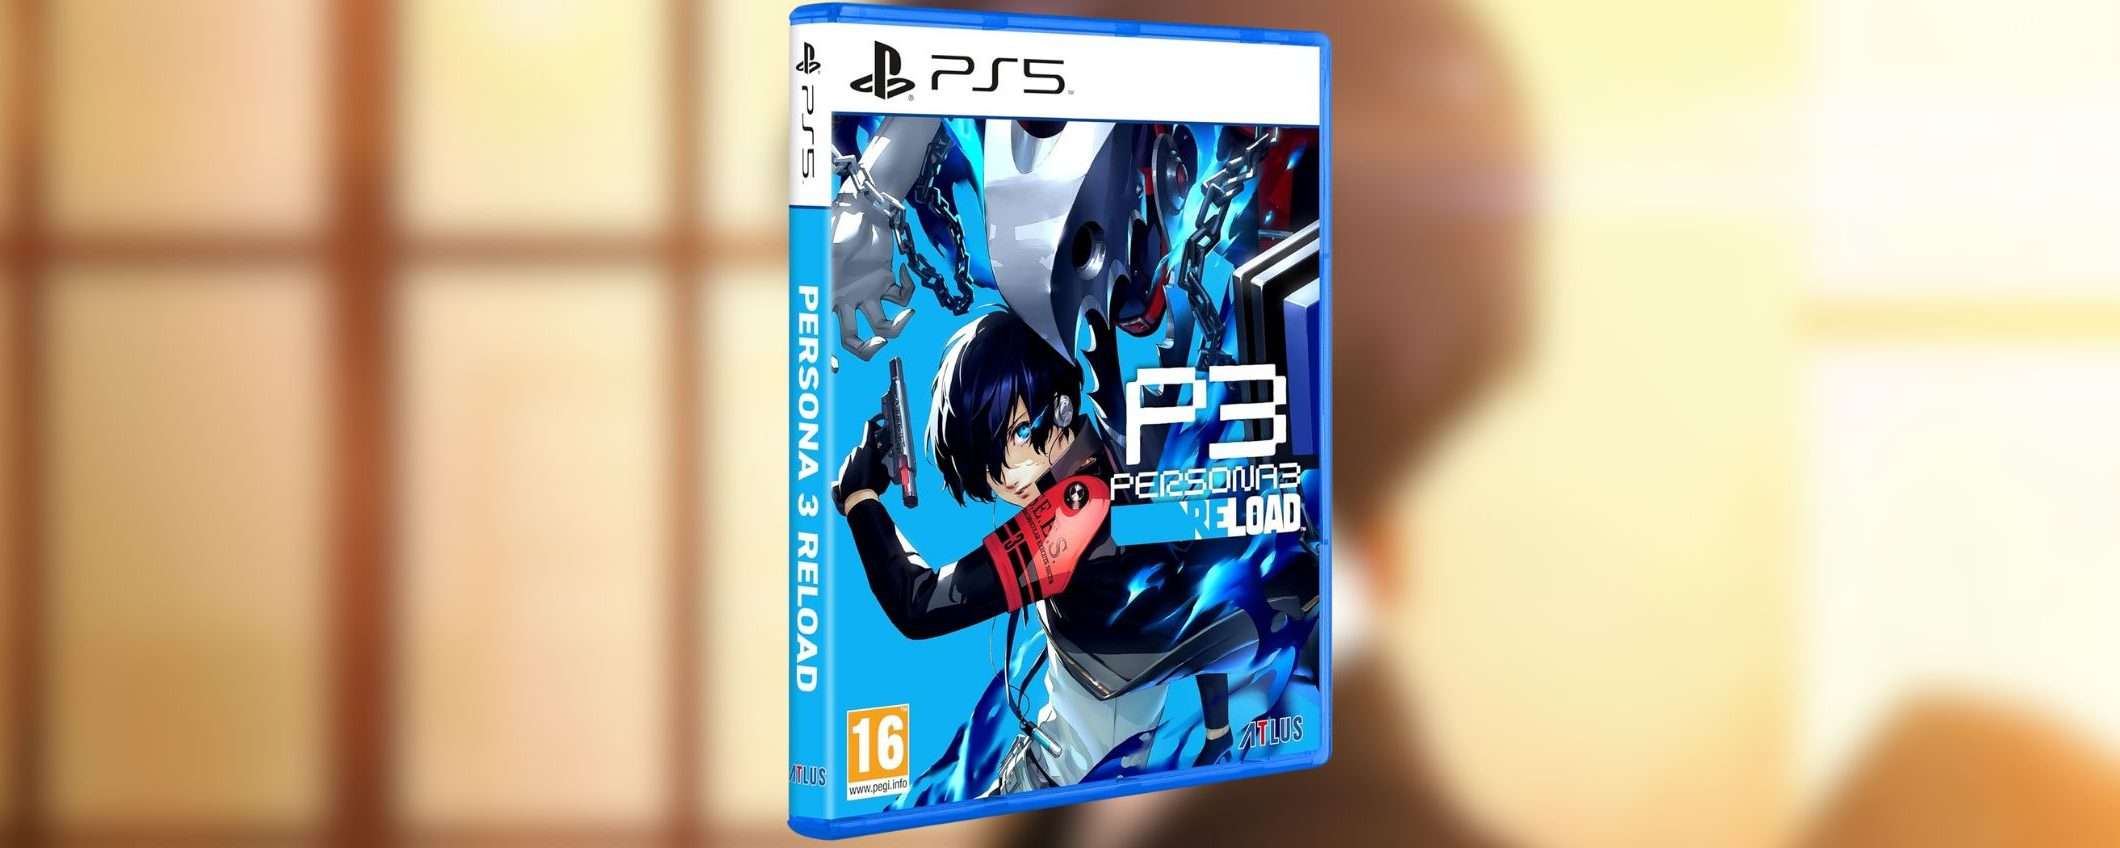 Persona 3 Reload per PS5: a sorpresa, il prezzo CROLLA su Amazon (-44%)